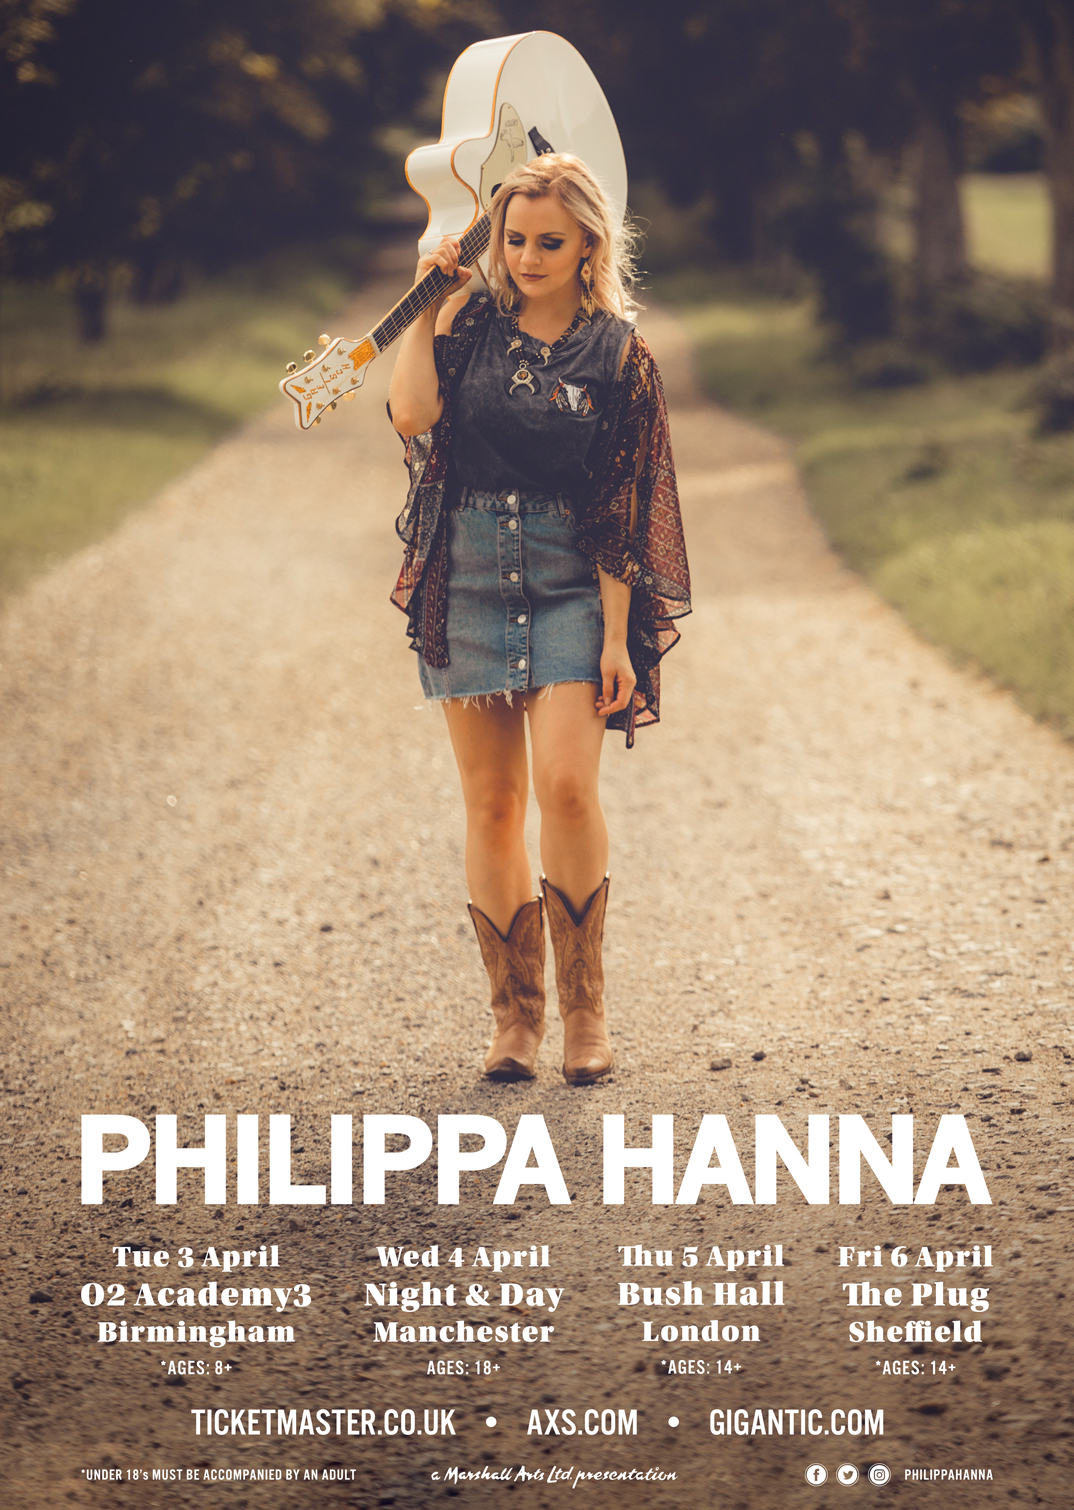 PHILIPPA HANNA ANNOUNCES UK HEADLINE TOUR DATES – APRIL 2018 – Building Our Own ...